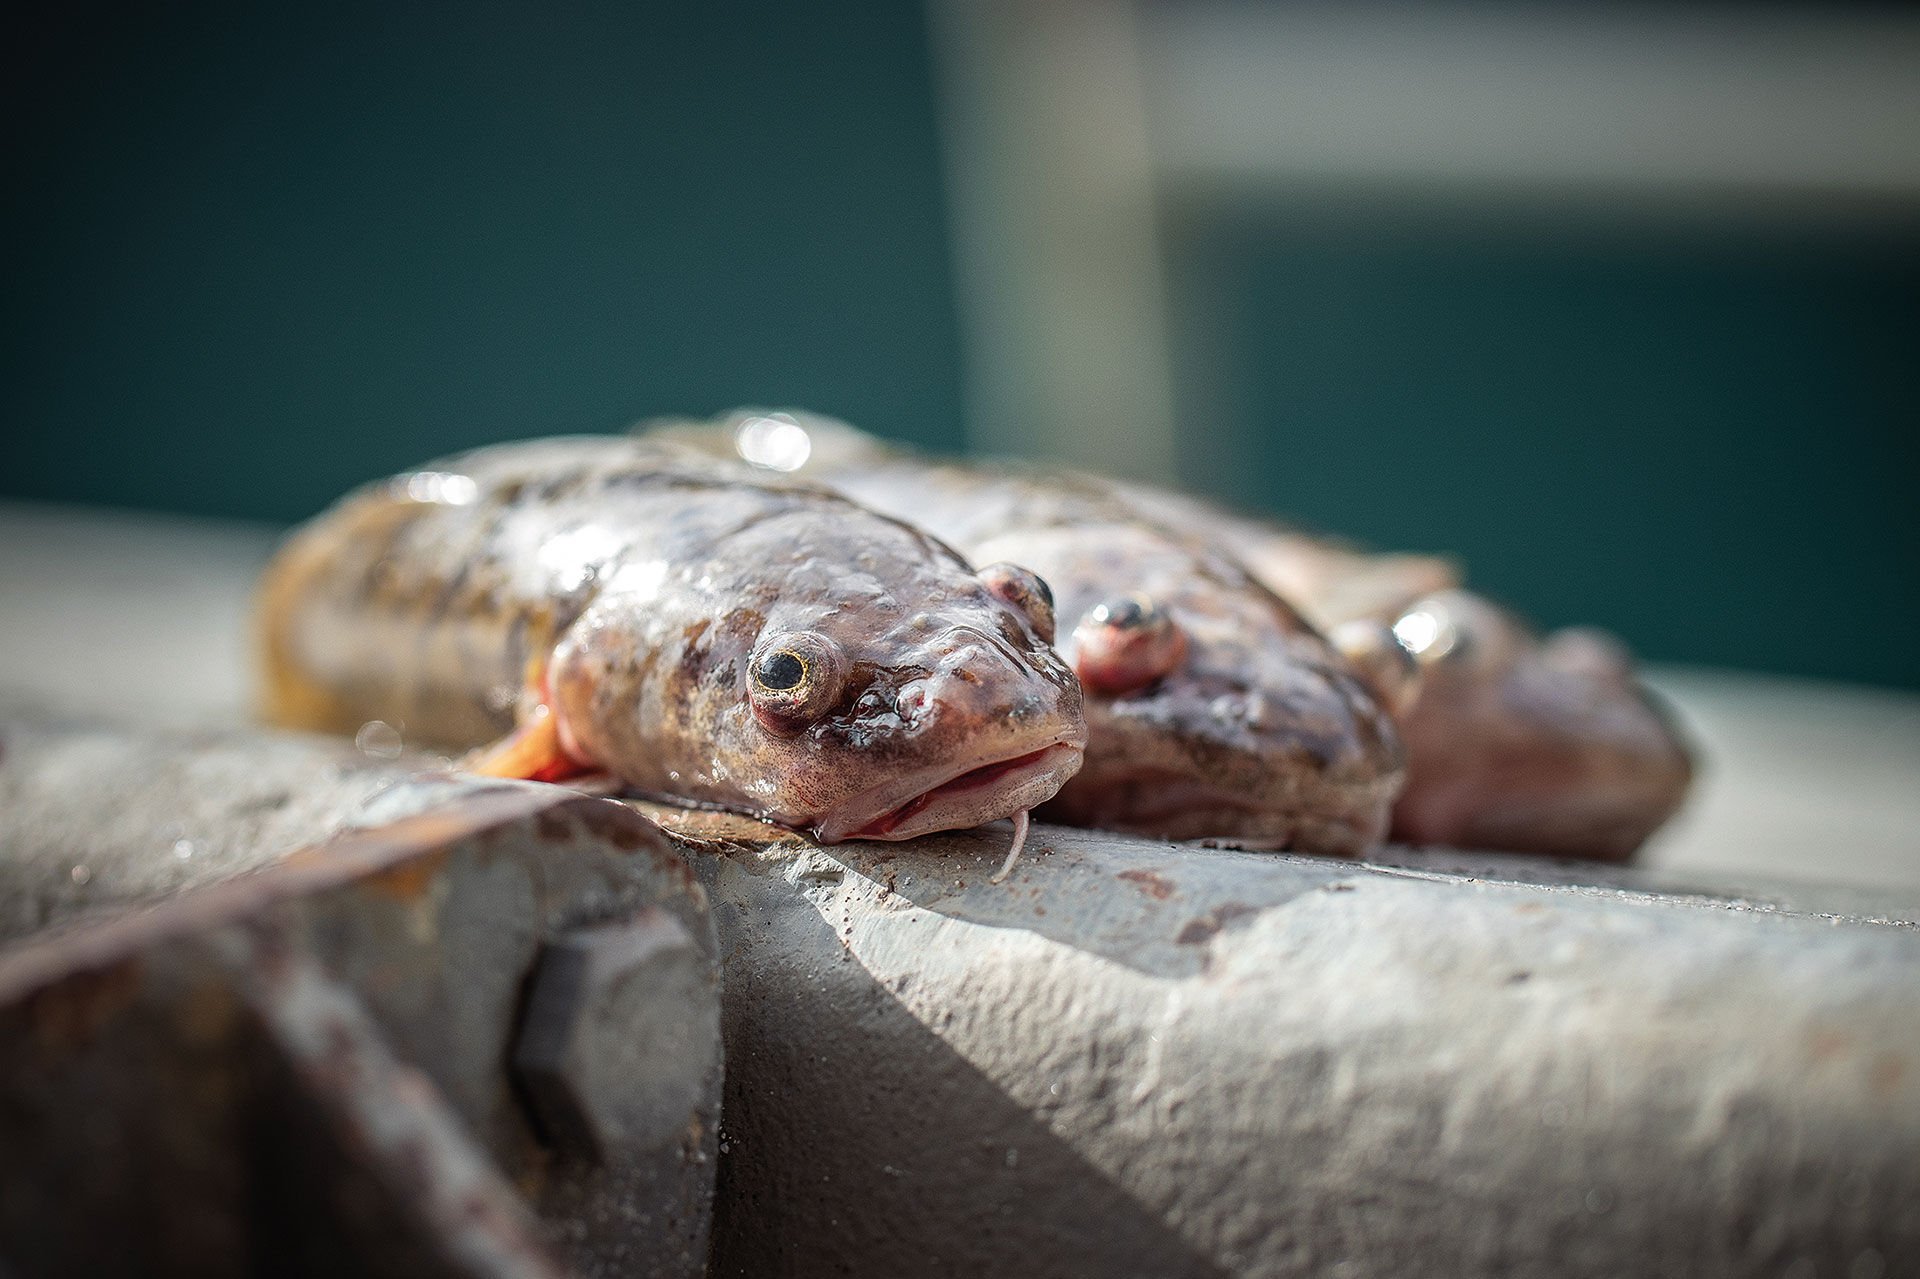  Trüschen zurücksetzen geht nicht! Weil die Fische aus so grosser Tiefe geholt werden, gehören sie anschliessend auch in die Pfanne. © André Suter  